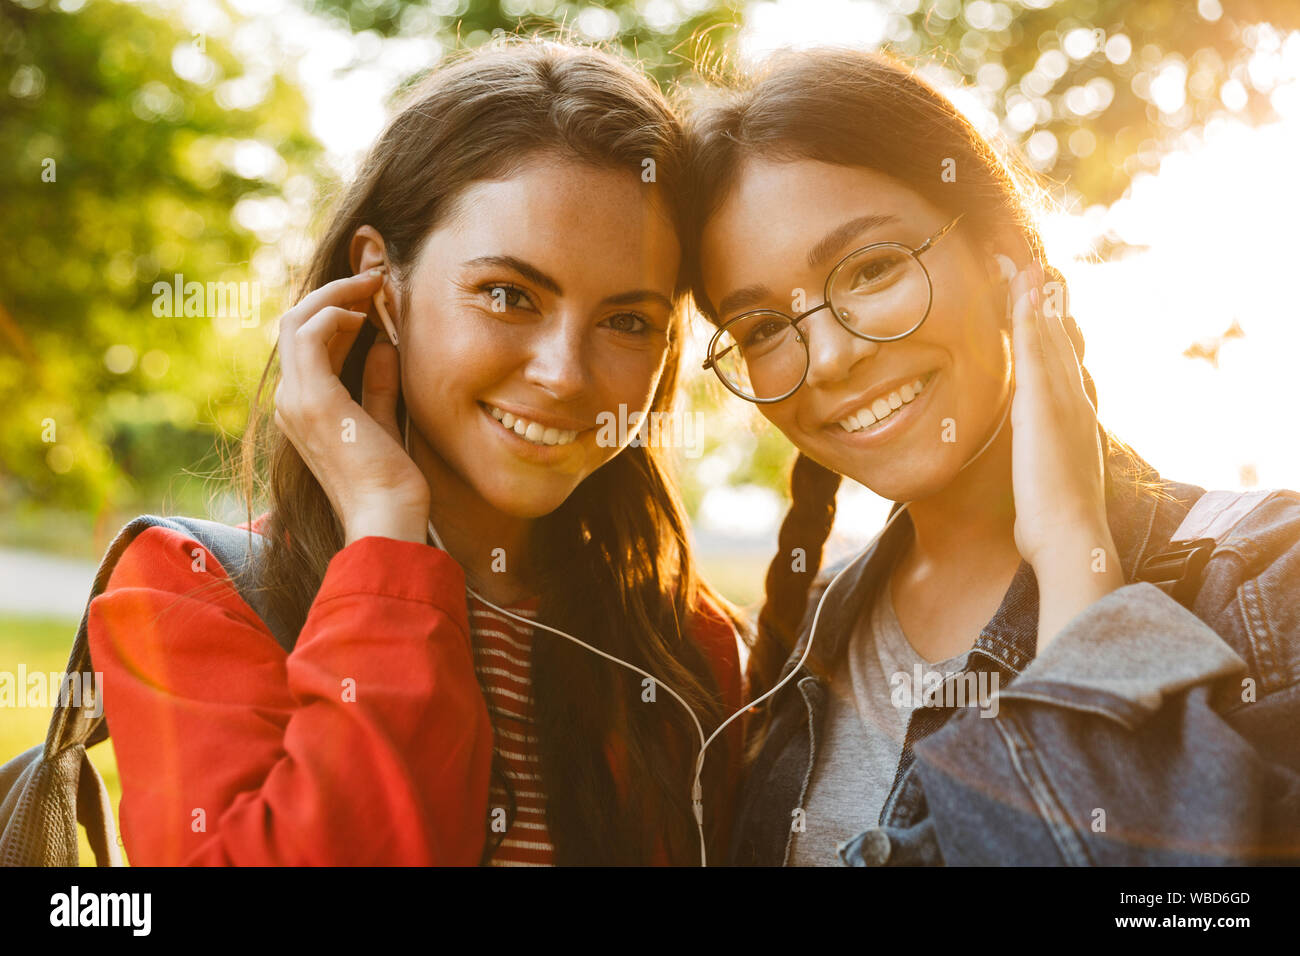 Bild Nahaufnahme von zwei netten Mädchen Studenten tragen Rucksäcke mit Ohrhörer und Kamera beim Gehen im Green Park Stockfoto